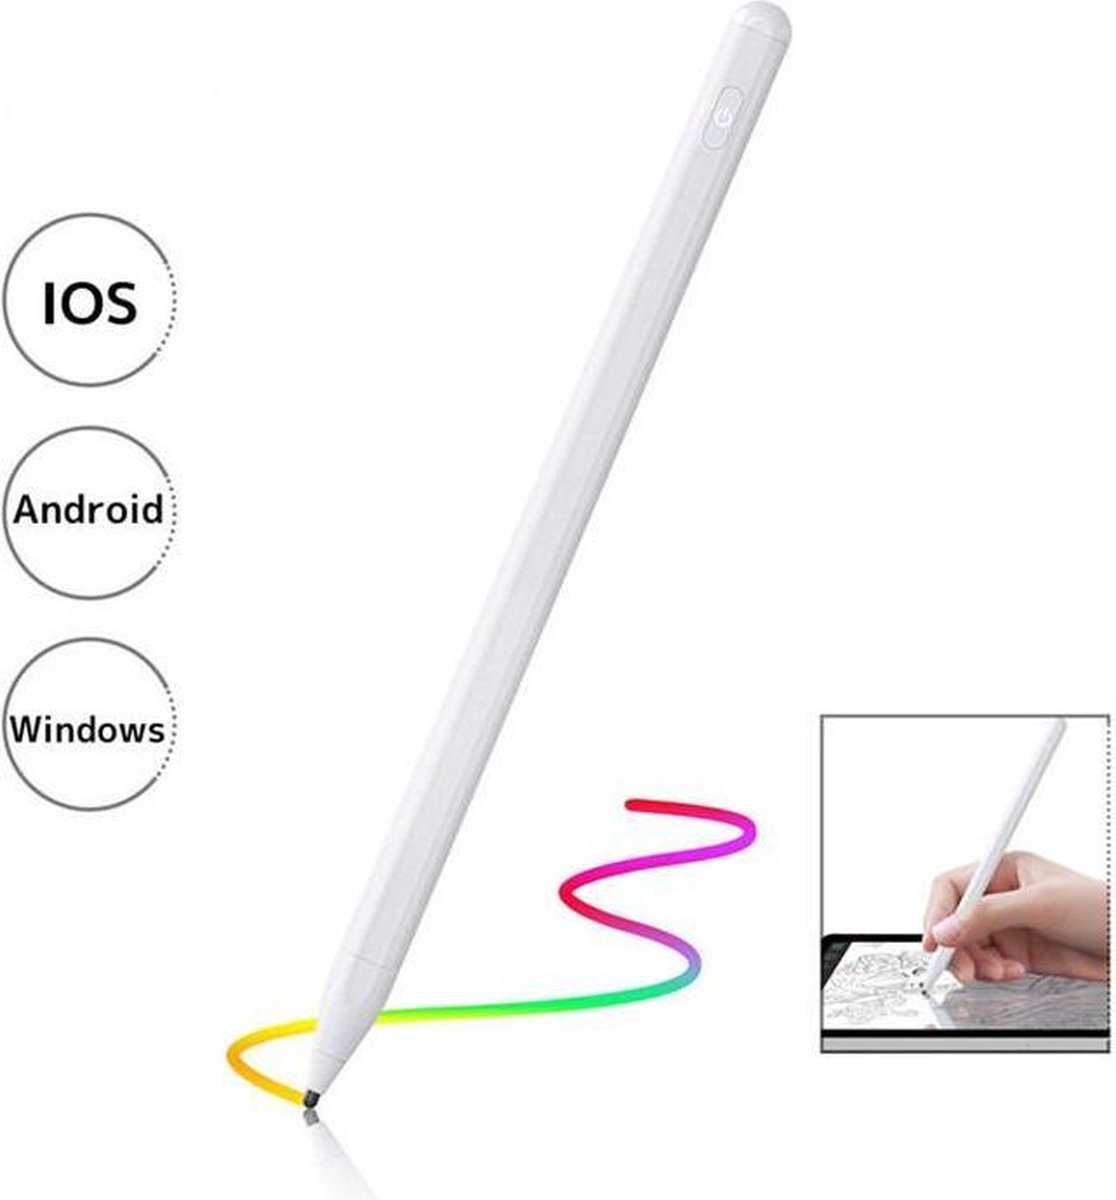 Stylus Pen - Magnetisch - Universeel - Voor iPad - iPhone / Apple - Android  - Samsung... | bol.com